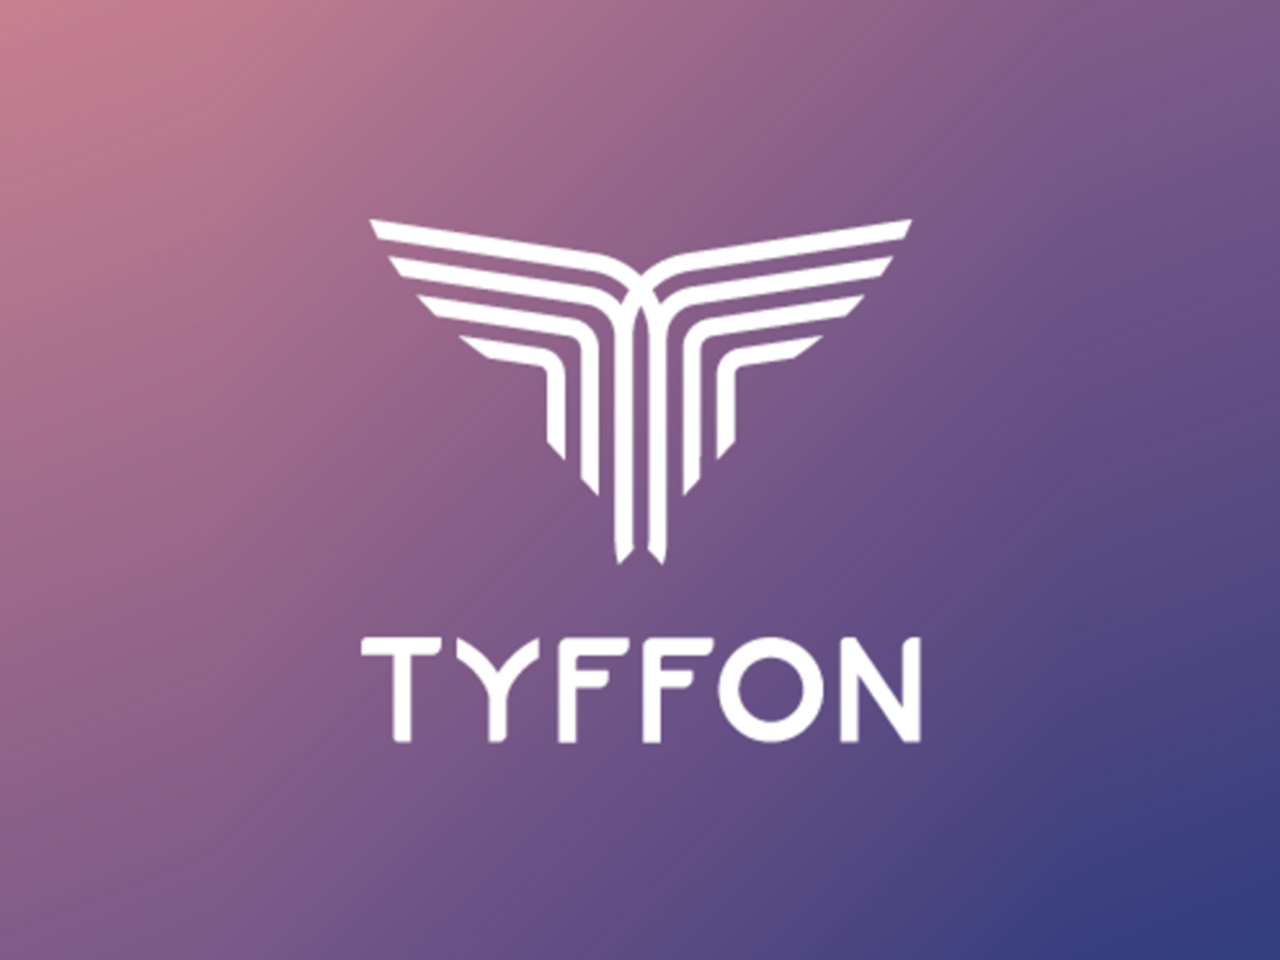 ティフォン株式会社（TYFFON Inc.）は、2011年11月に設立され、東京・品川に本社オフィスを置く。